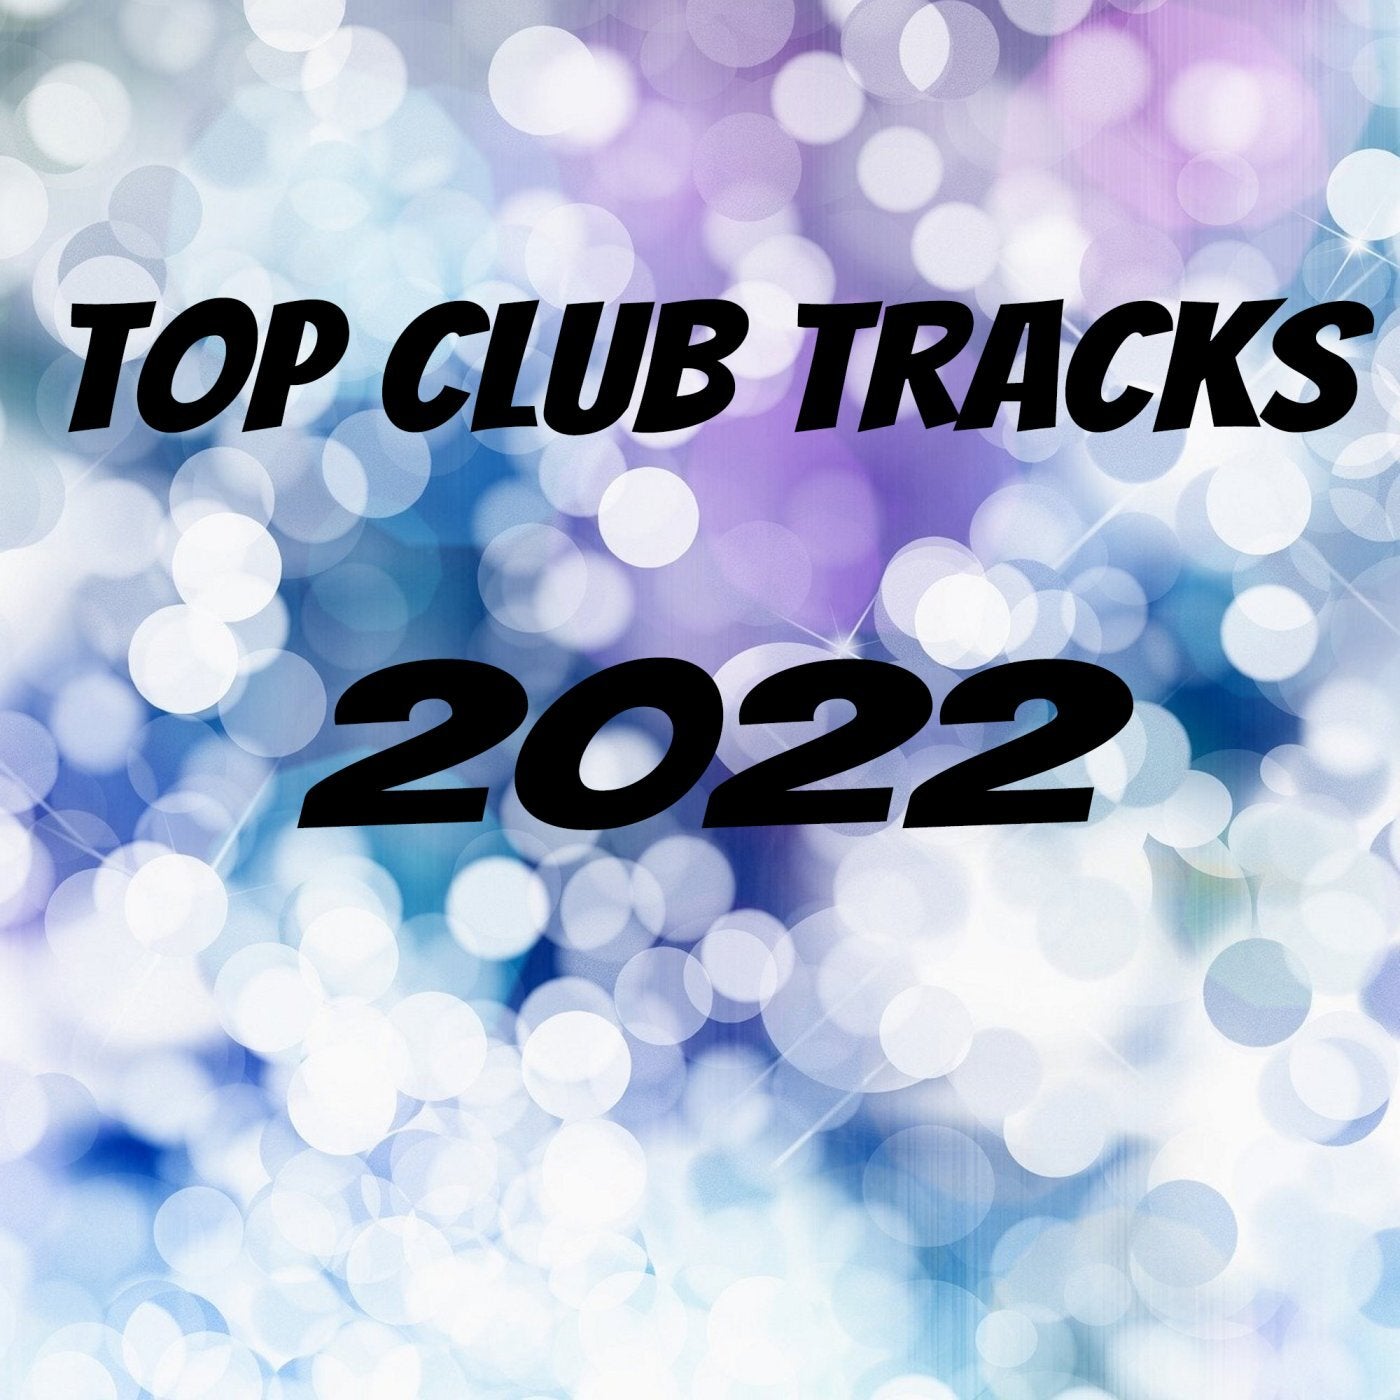 Top Club Tracks 2022